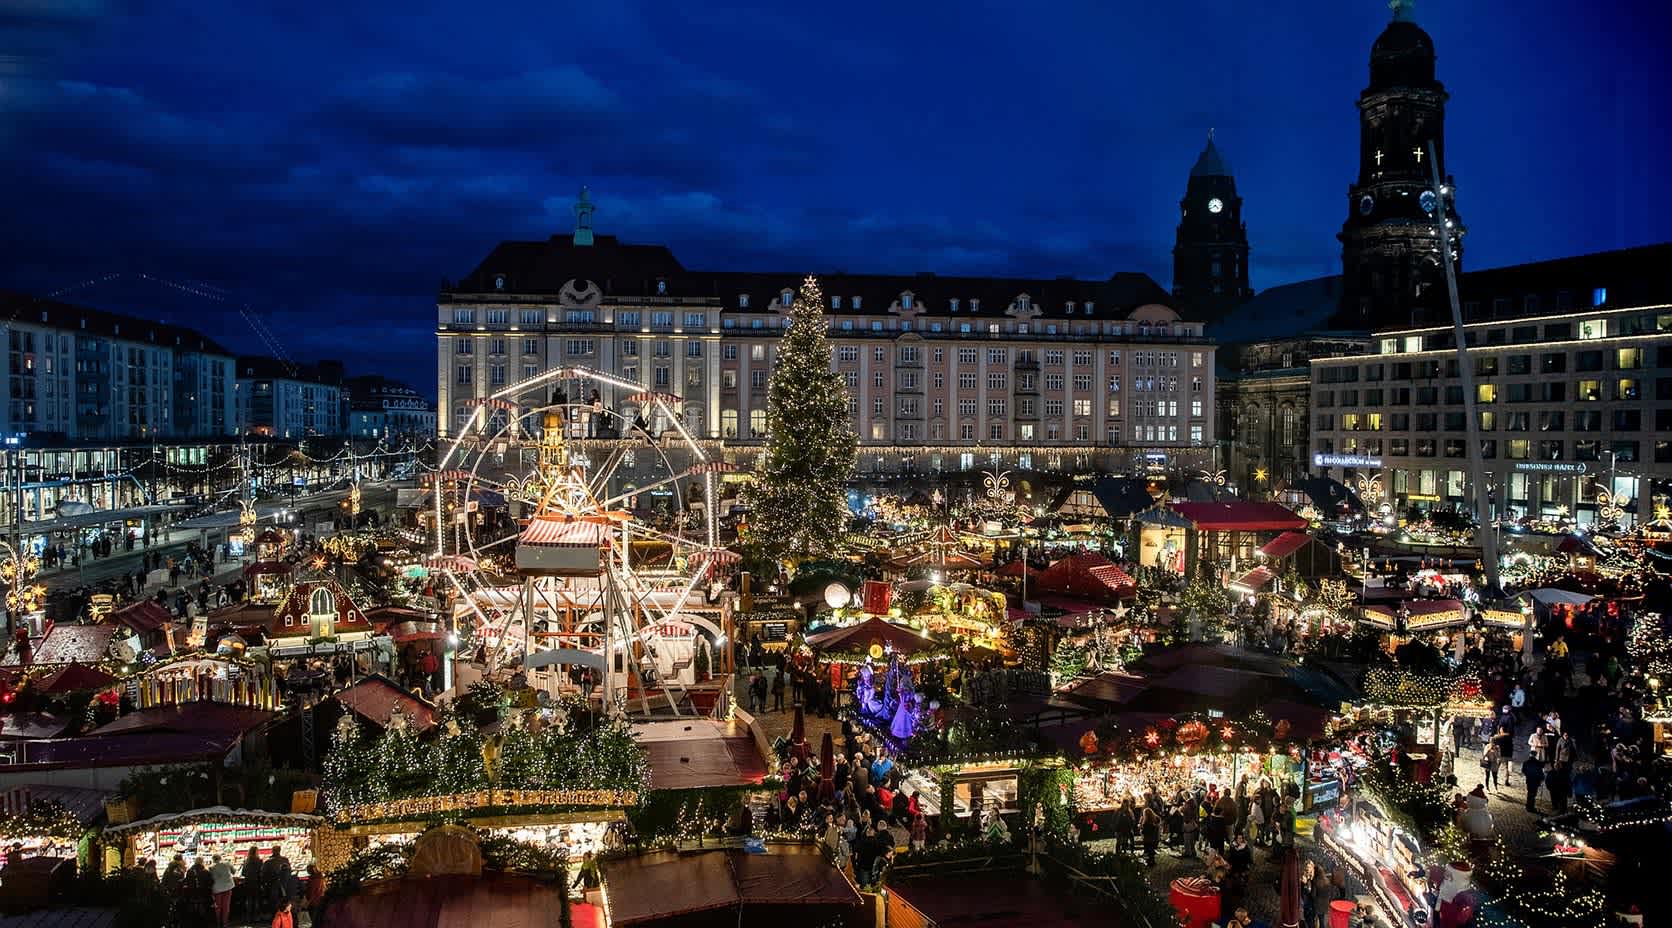 Weihnachtsmarkt in Dresden (Quelle: https://pixabay.com/de/photos/dresden-weihnachtsmarkt-stadt-5893714/)